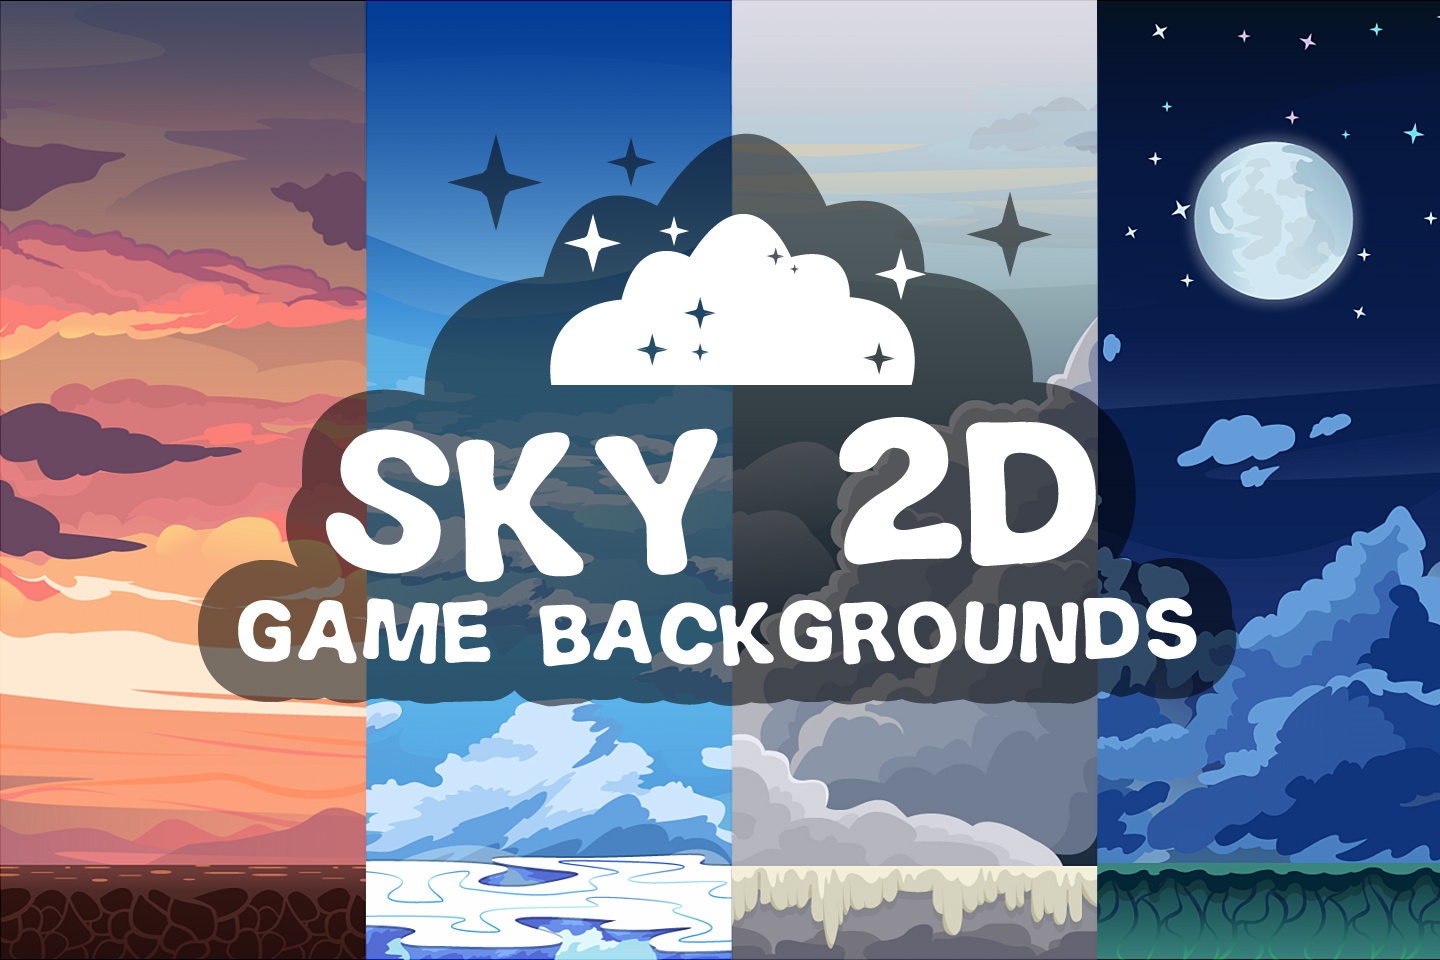 Khám phá tuyệt vời cùng hình nền Trò chơi Sky 2D, tạo không gian chơi game vô cùng độc đáo! Hãy khám phá những thiên đường ẩn sâu trong hình nền này và cùng tham gia trò chơi thú vị ngay bây giờ!